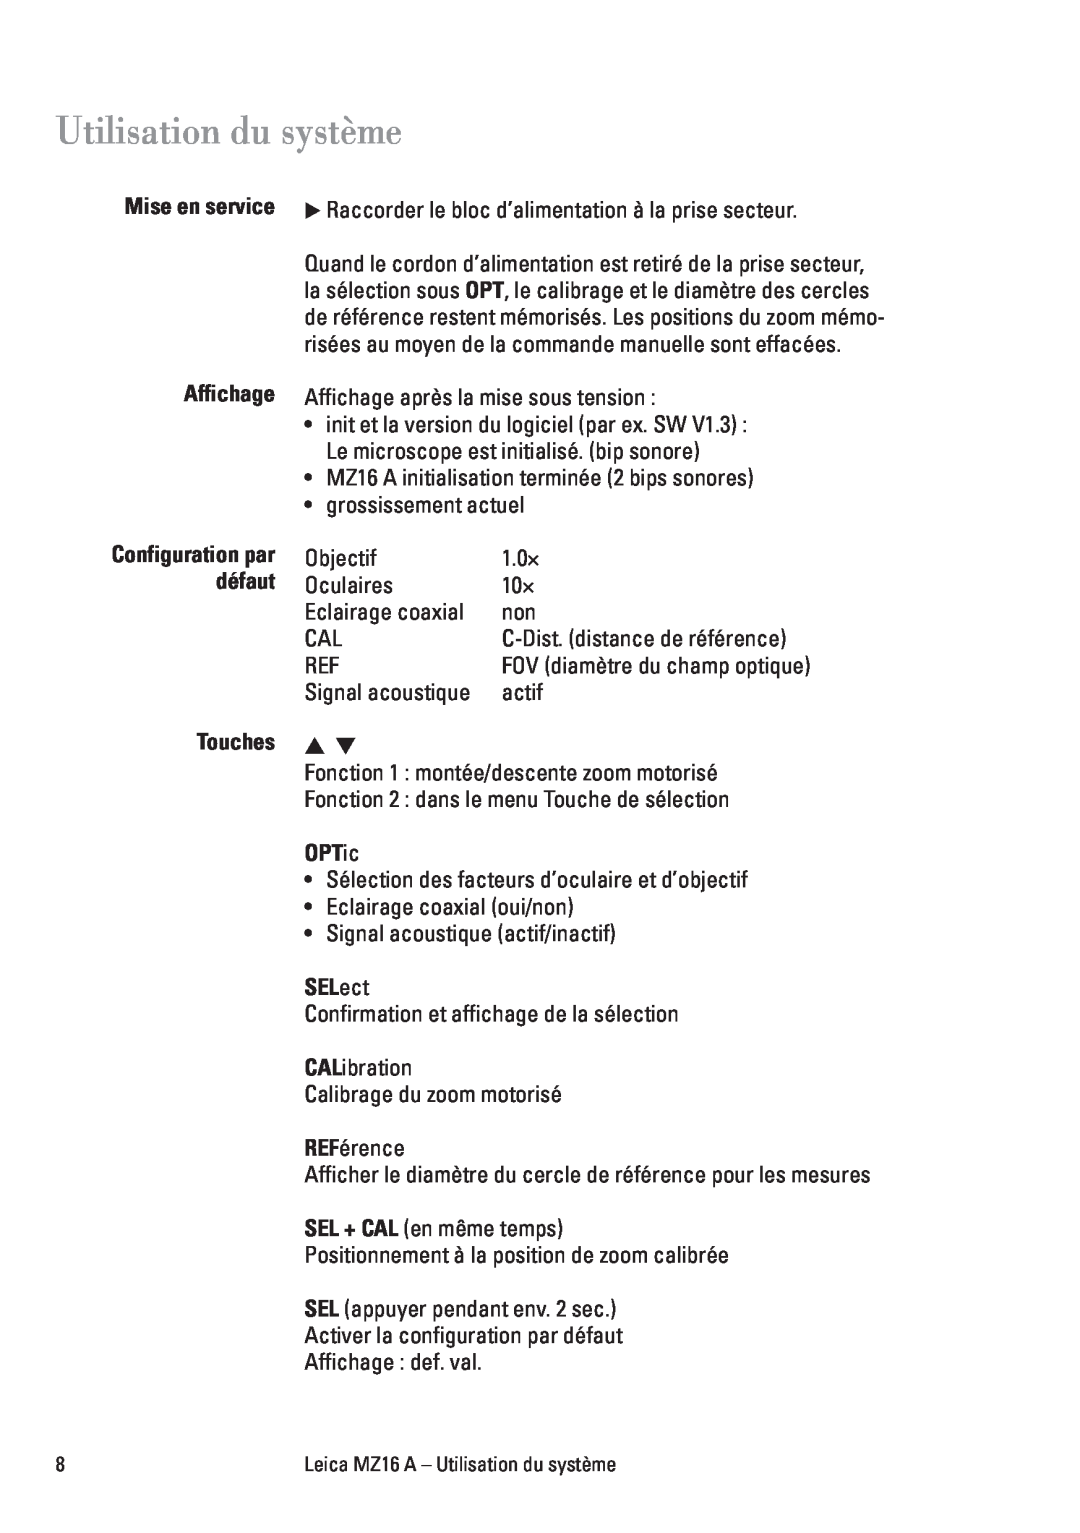 Leica MZ16A manuel dutilisation Utilisation du système, Mise en service Affichage, défaut, Touches, OPTic, SELect 